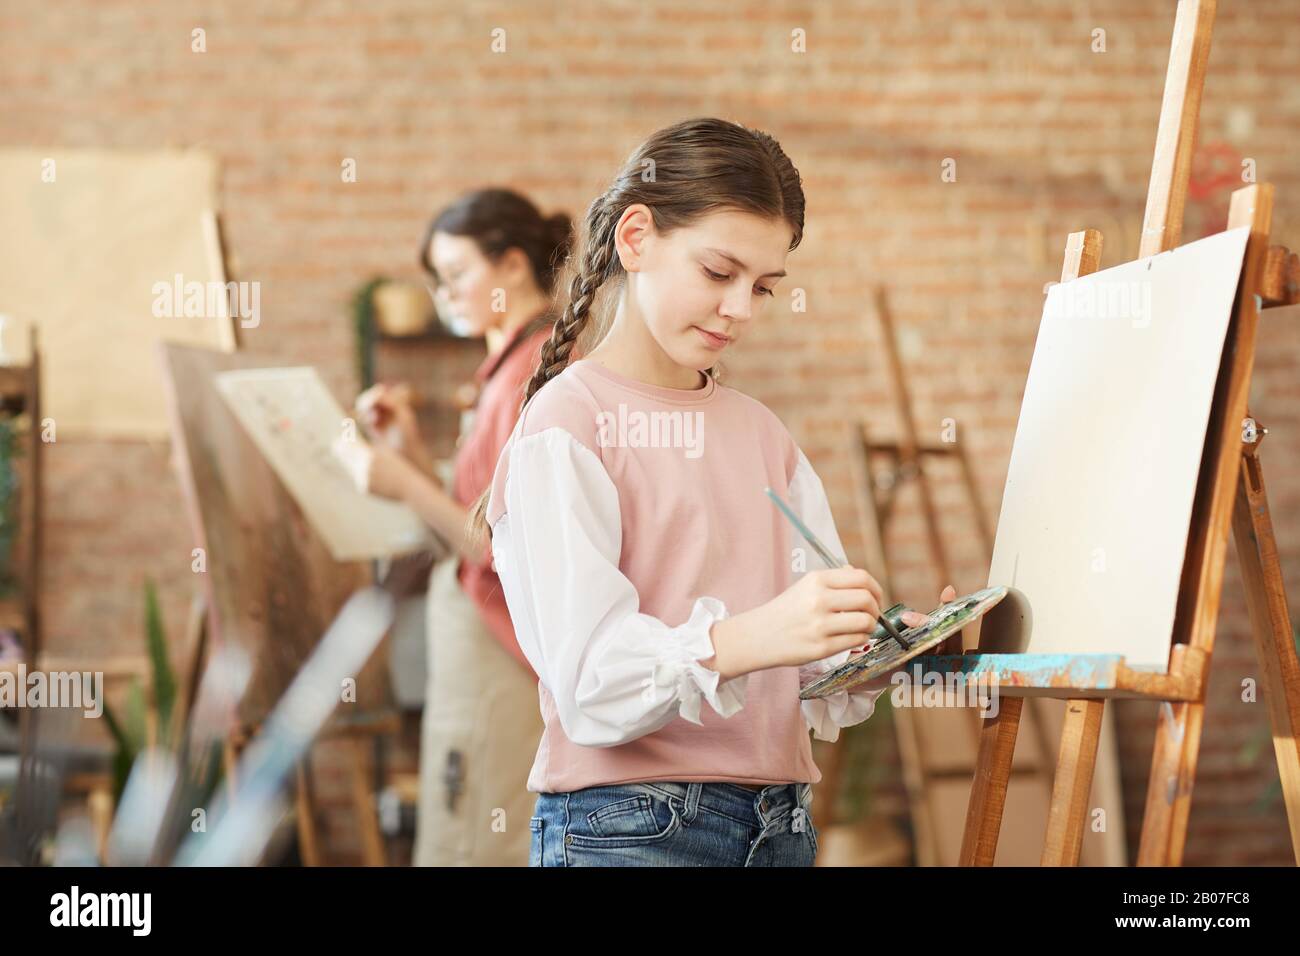 Jeune fille dans des vêtements décontractés apprenant à peindre sur un chevalet pendant sa leçon au studio d'art Banque D'Images